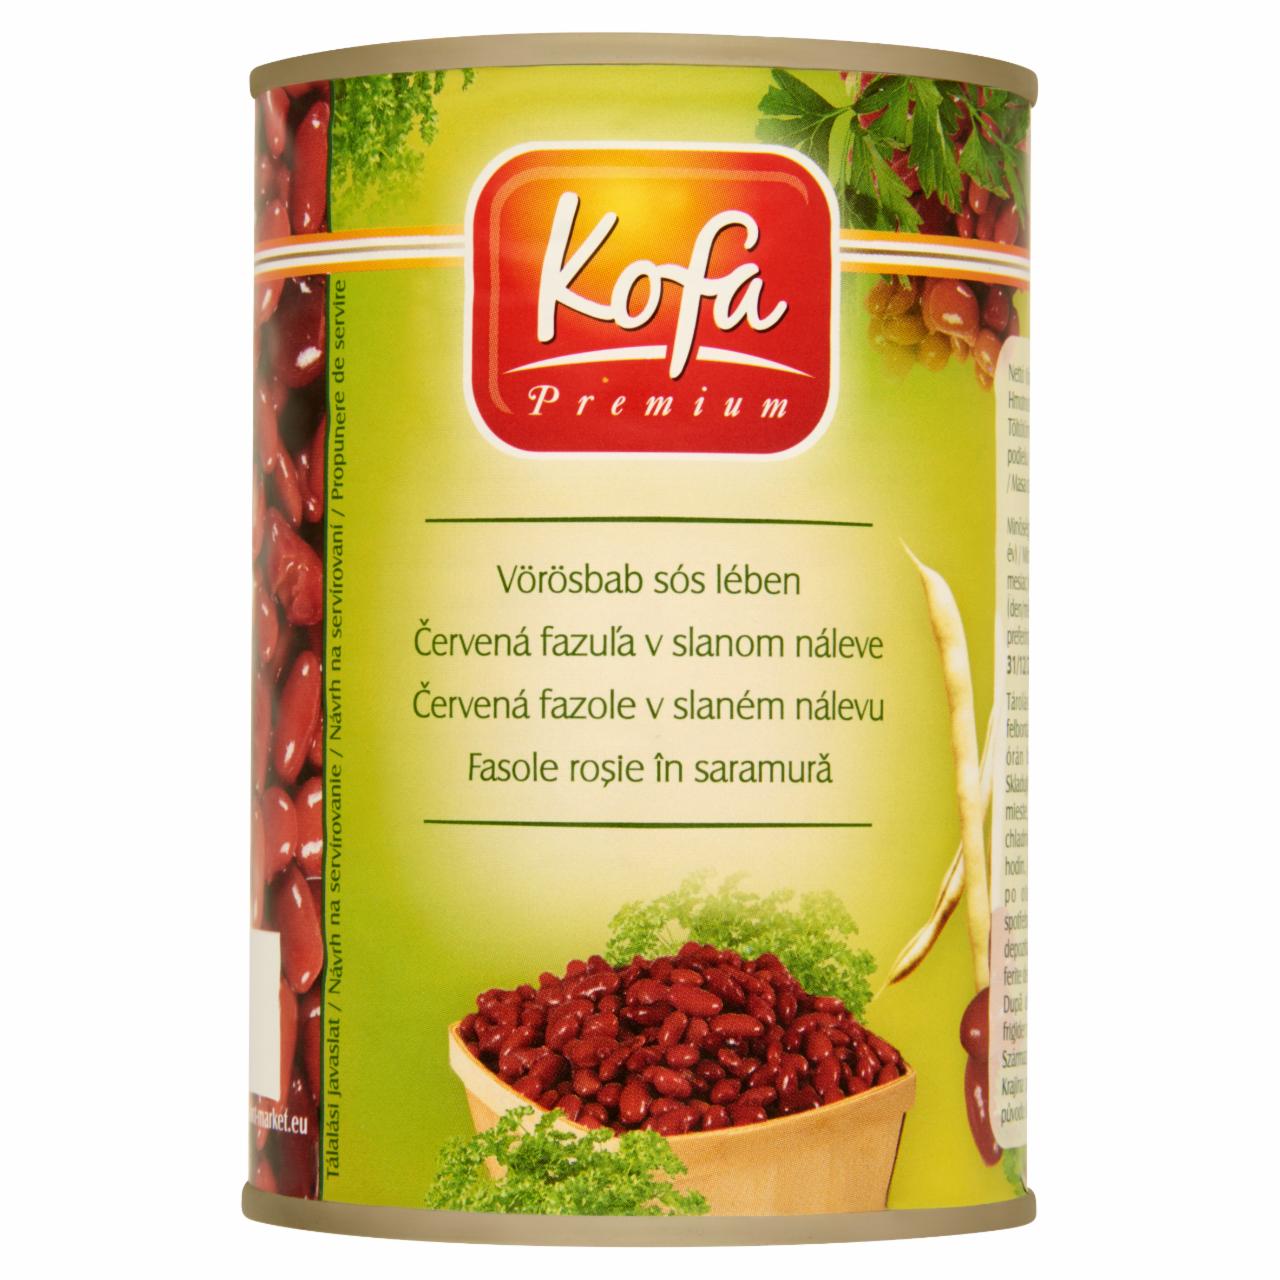 Képek - Kofa Premium vörösbab sós lében 400 g